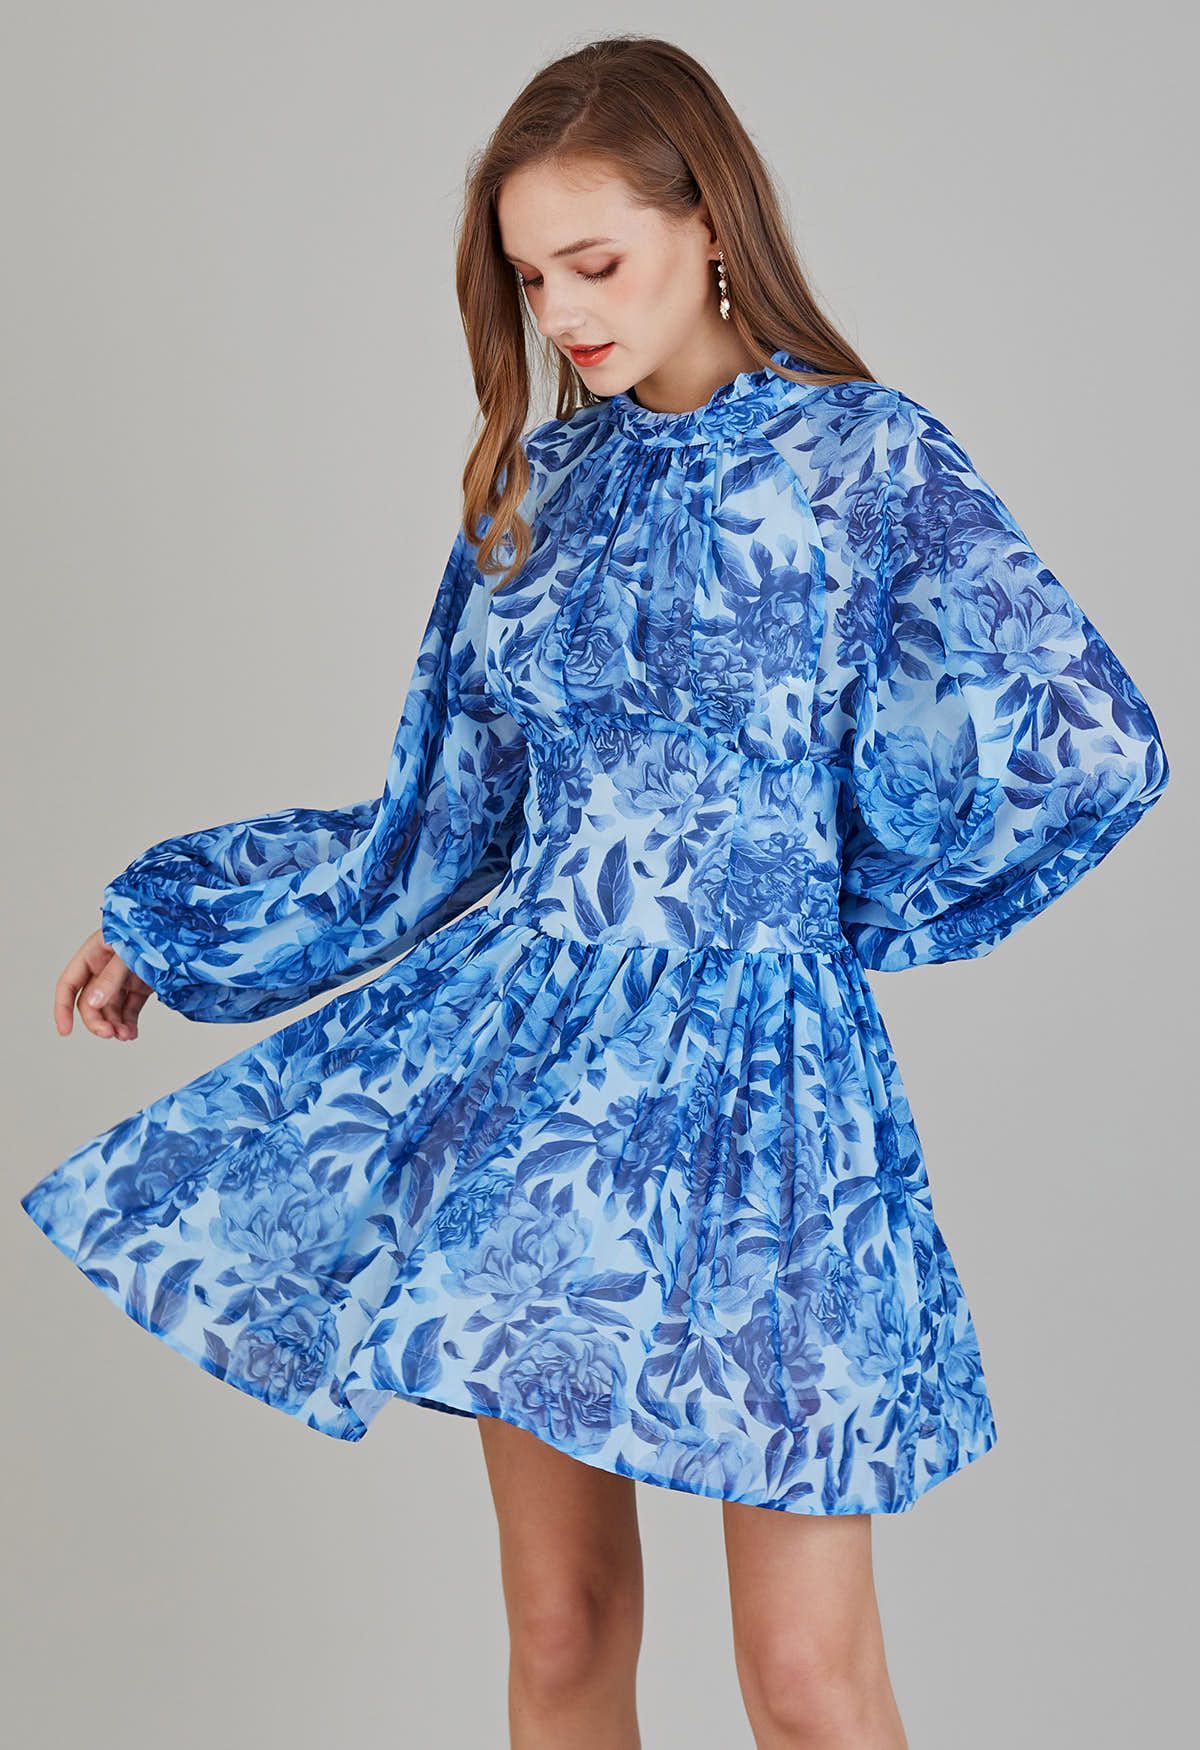 فستان مكشكش بأكمام فقاعية مزهّر ومفتوح من الخلف باللون الأزرق